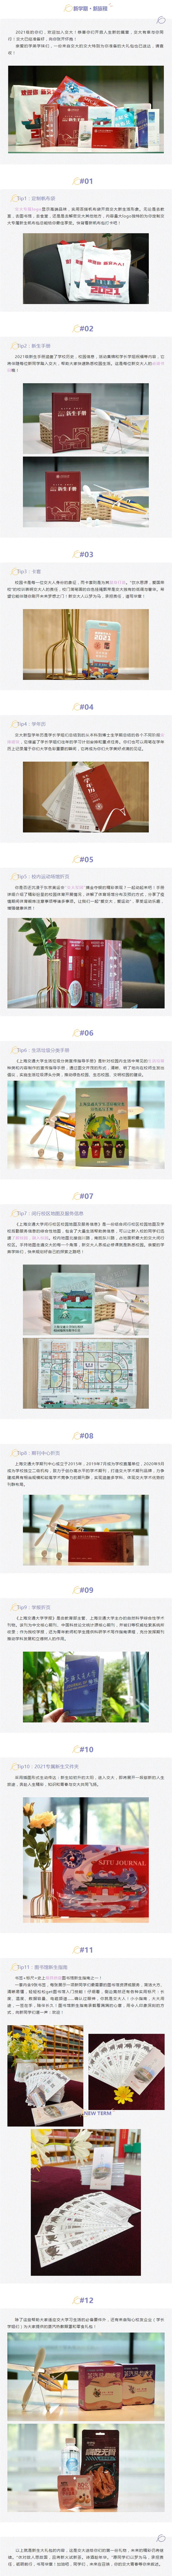 上海交通大学丨叮_您的新生大礼包已送达，请查收！